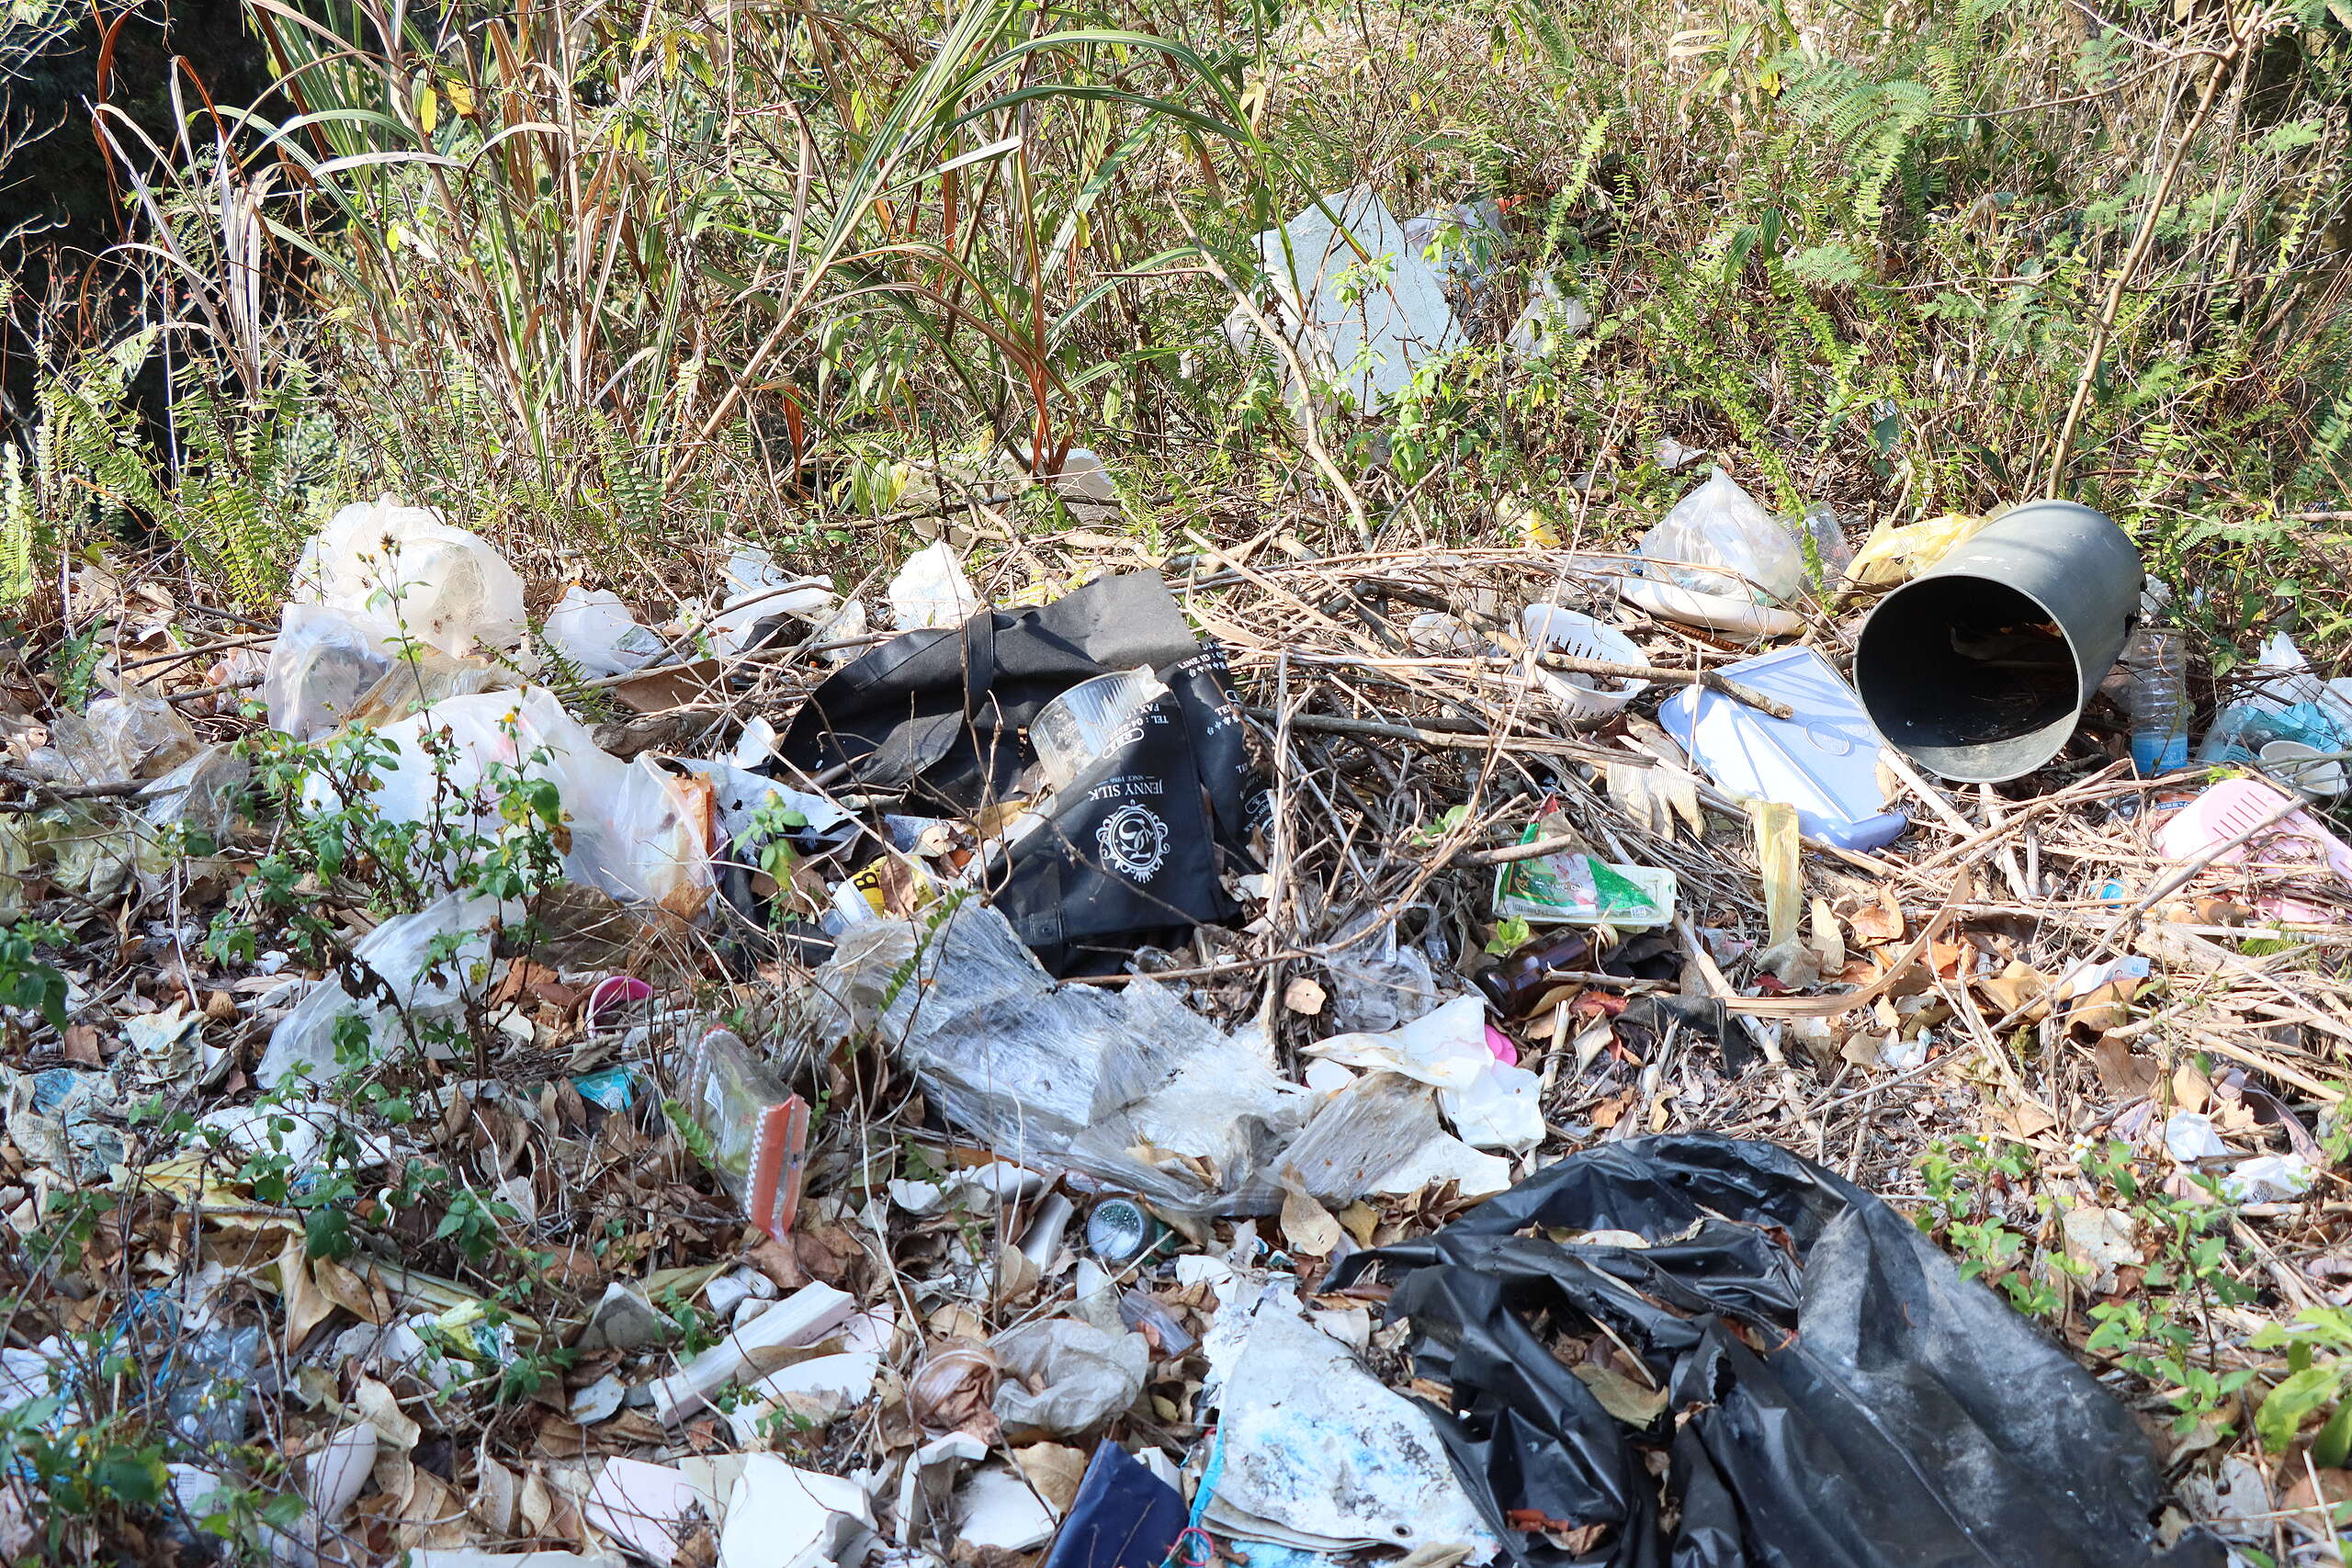 塑膠氾濫已是全球必須面對的環境問題，然而臺灣與全球在限用和管制塑膠的行動仍不夠積極。